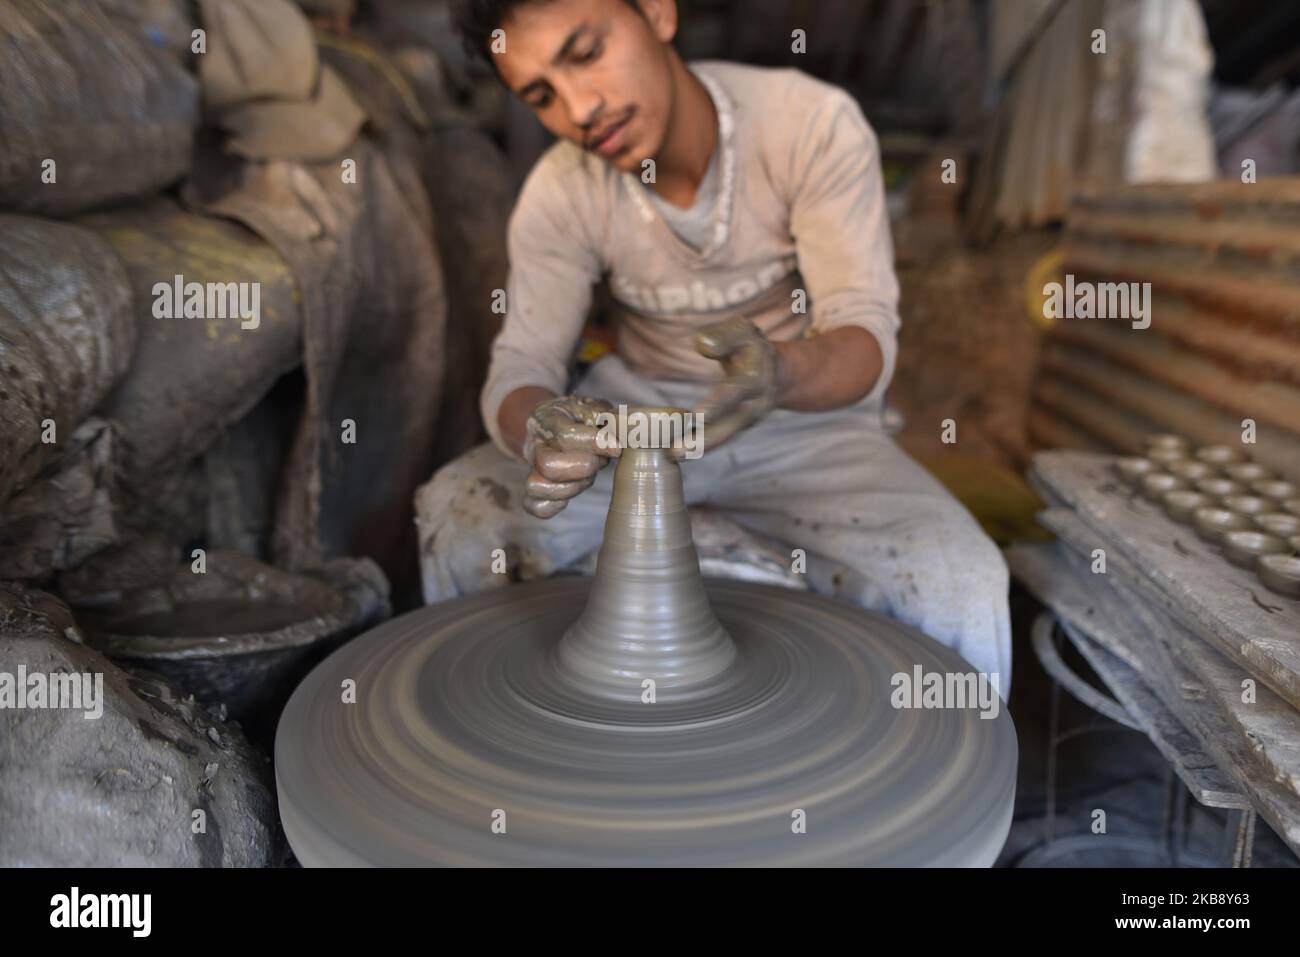 Ein Mann, der Tontopf-Lampen für das bevorstehende Tihar- oder Deepawali-Festival auf seinem Workshop am Pottery Square, Bhaktapur, Nepal, am Dienstag, den 22. Oktober 2019, macht. Nepalese Potter arbeitet an ihrer traditionellen Töpferei in kleinem Maßstab in Bhaktapur, Nepal. Bhaktapur ist eine alte Stadt im Kathmandu Valley und wird aufgrund seiner reichen Kultur, Tempel und Holz-, Metall- und Steinkunst von der UNESCO zum Weltkulturerbe erklärt. (Foto von Narayan Maharjan/NurPhoto) Stockfoto